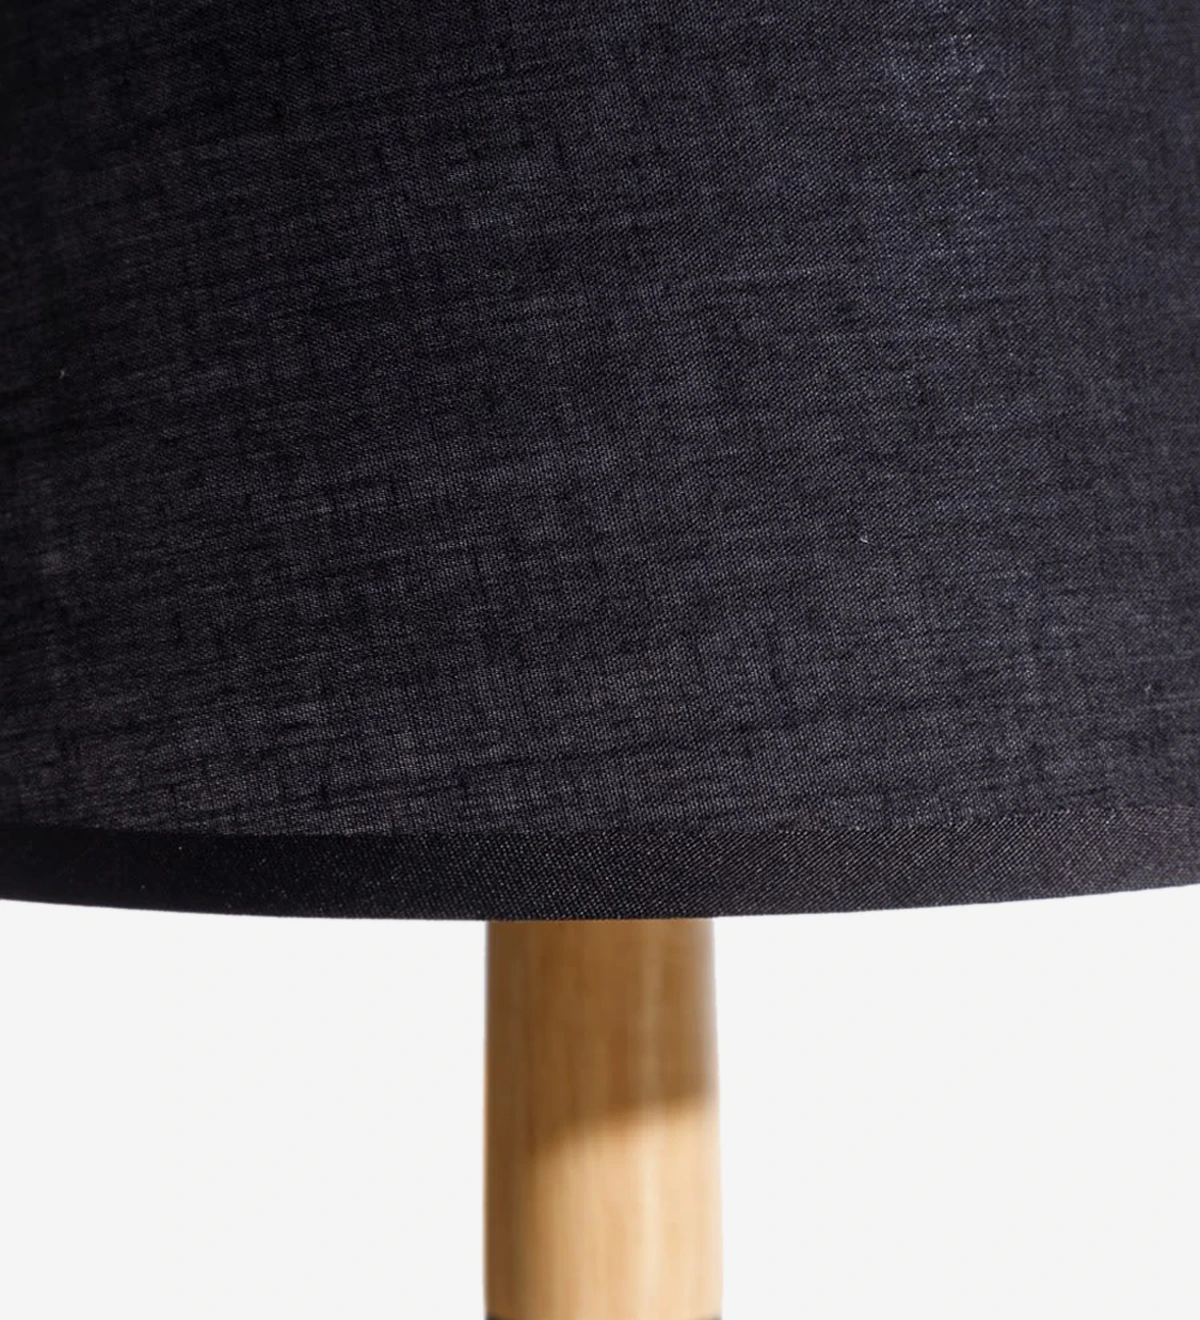  Lámpara de sobremesa con base de metal pintado de negro y madera con pantalla de tela negra.